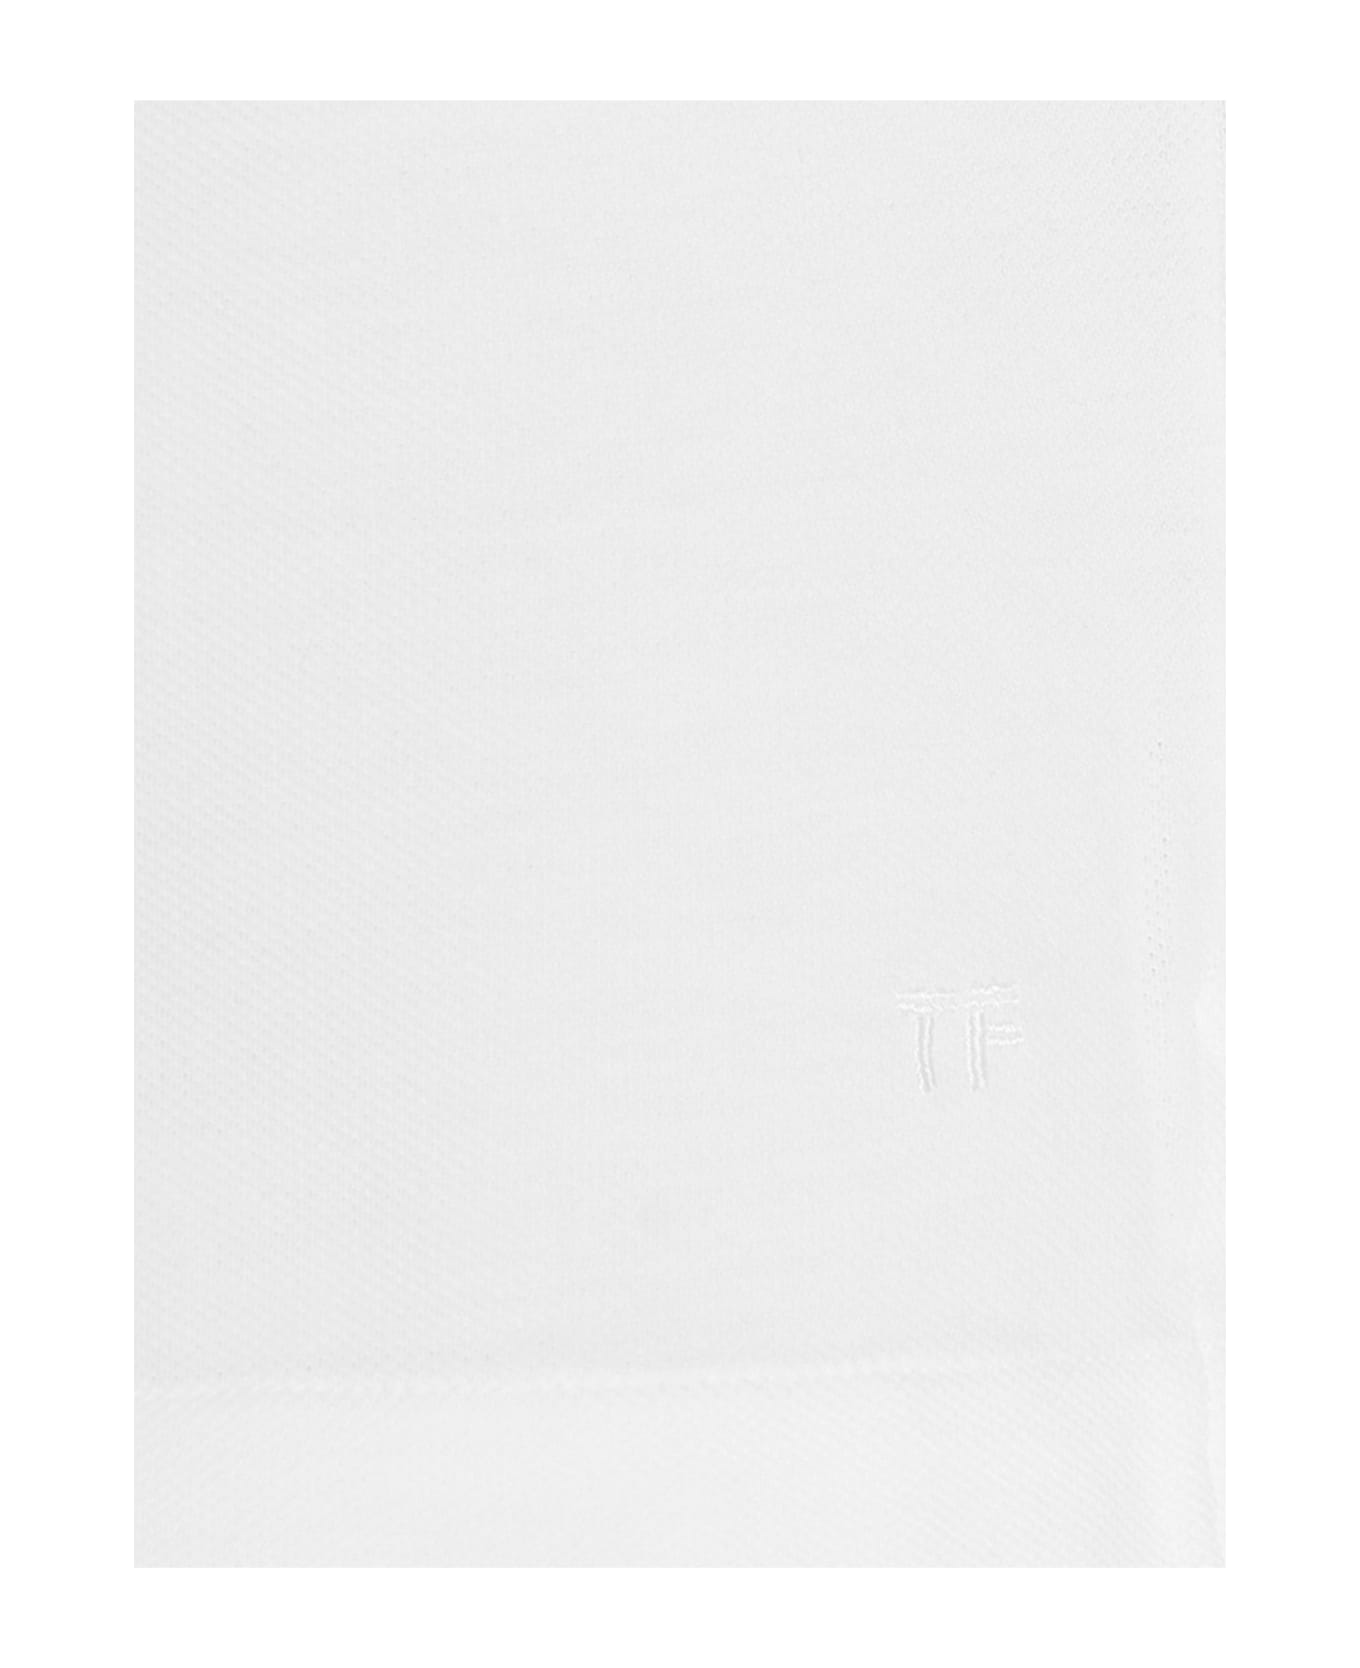 Tom Ford Logo Embroidery Cotton Plain Polo Shirt - White